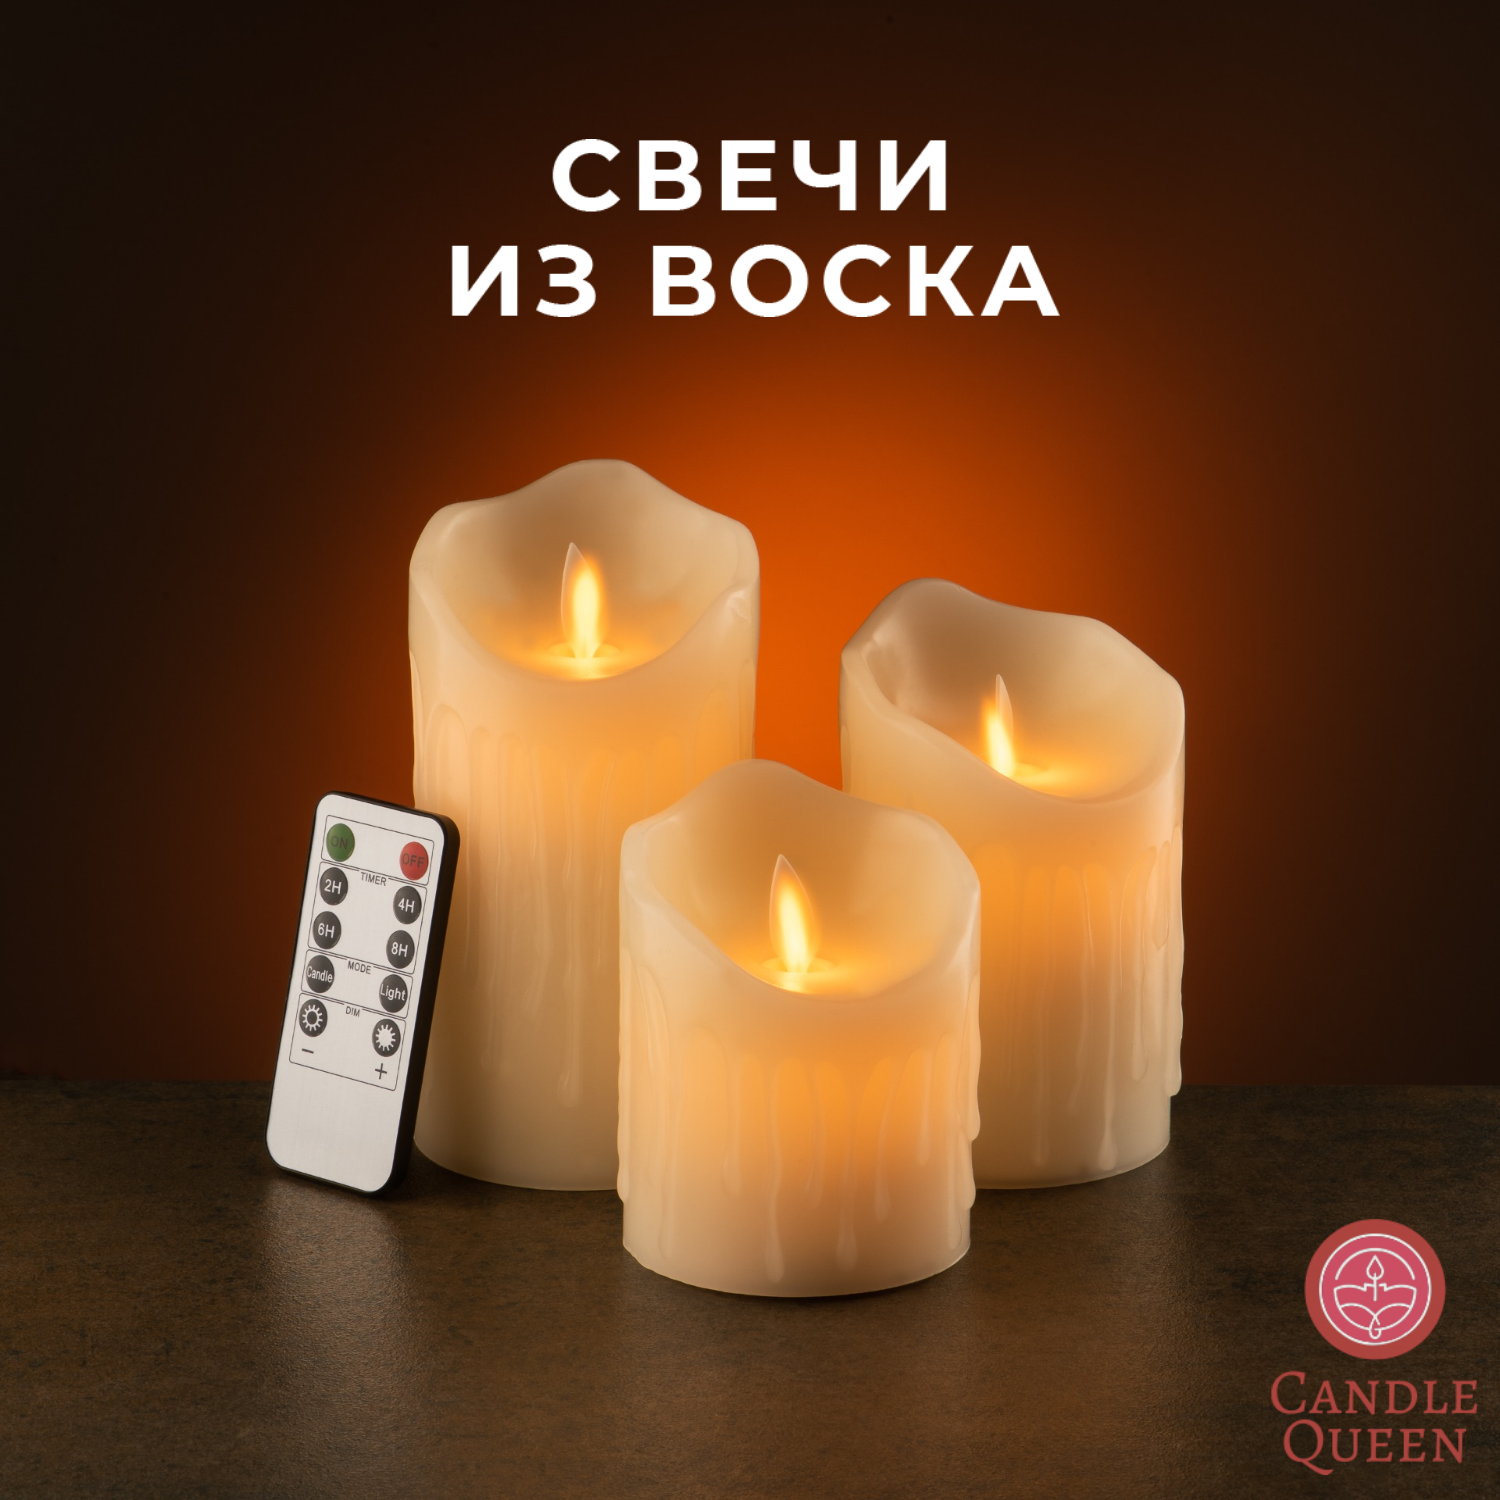 Светодиодная свеча CandleQueen из воска R3SC153-N 3 шт.